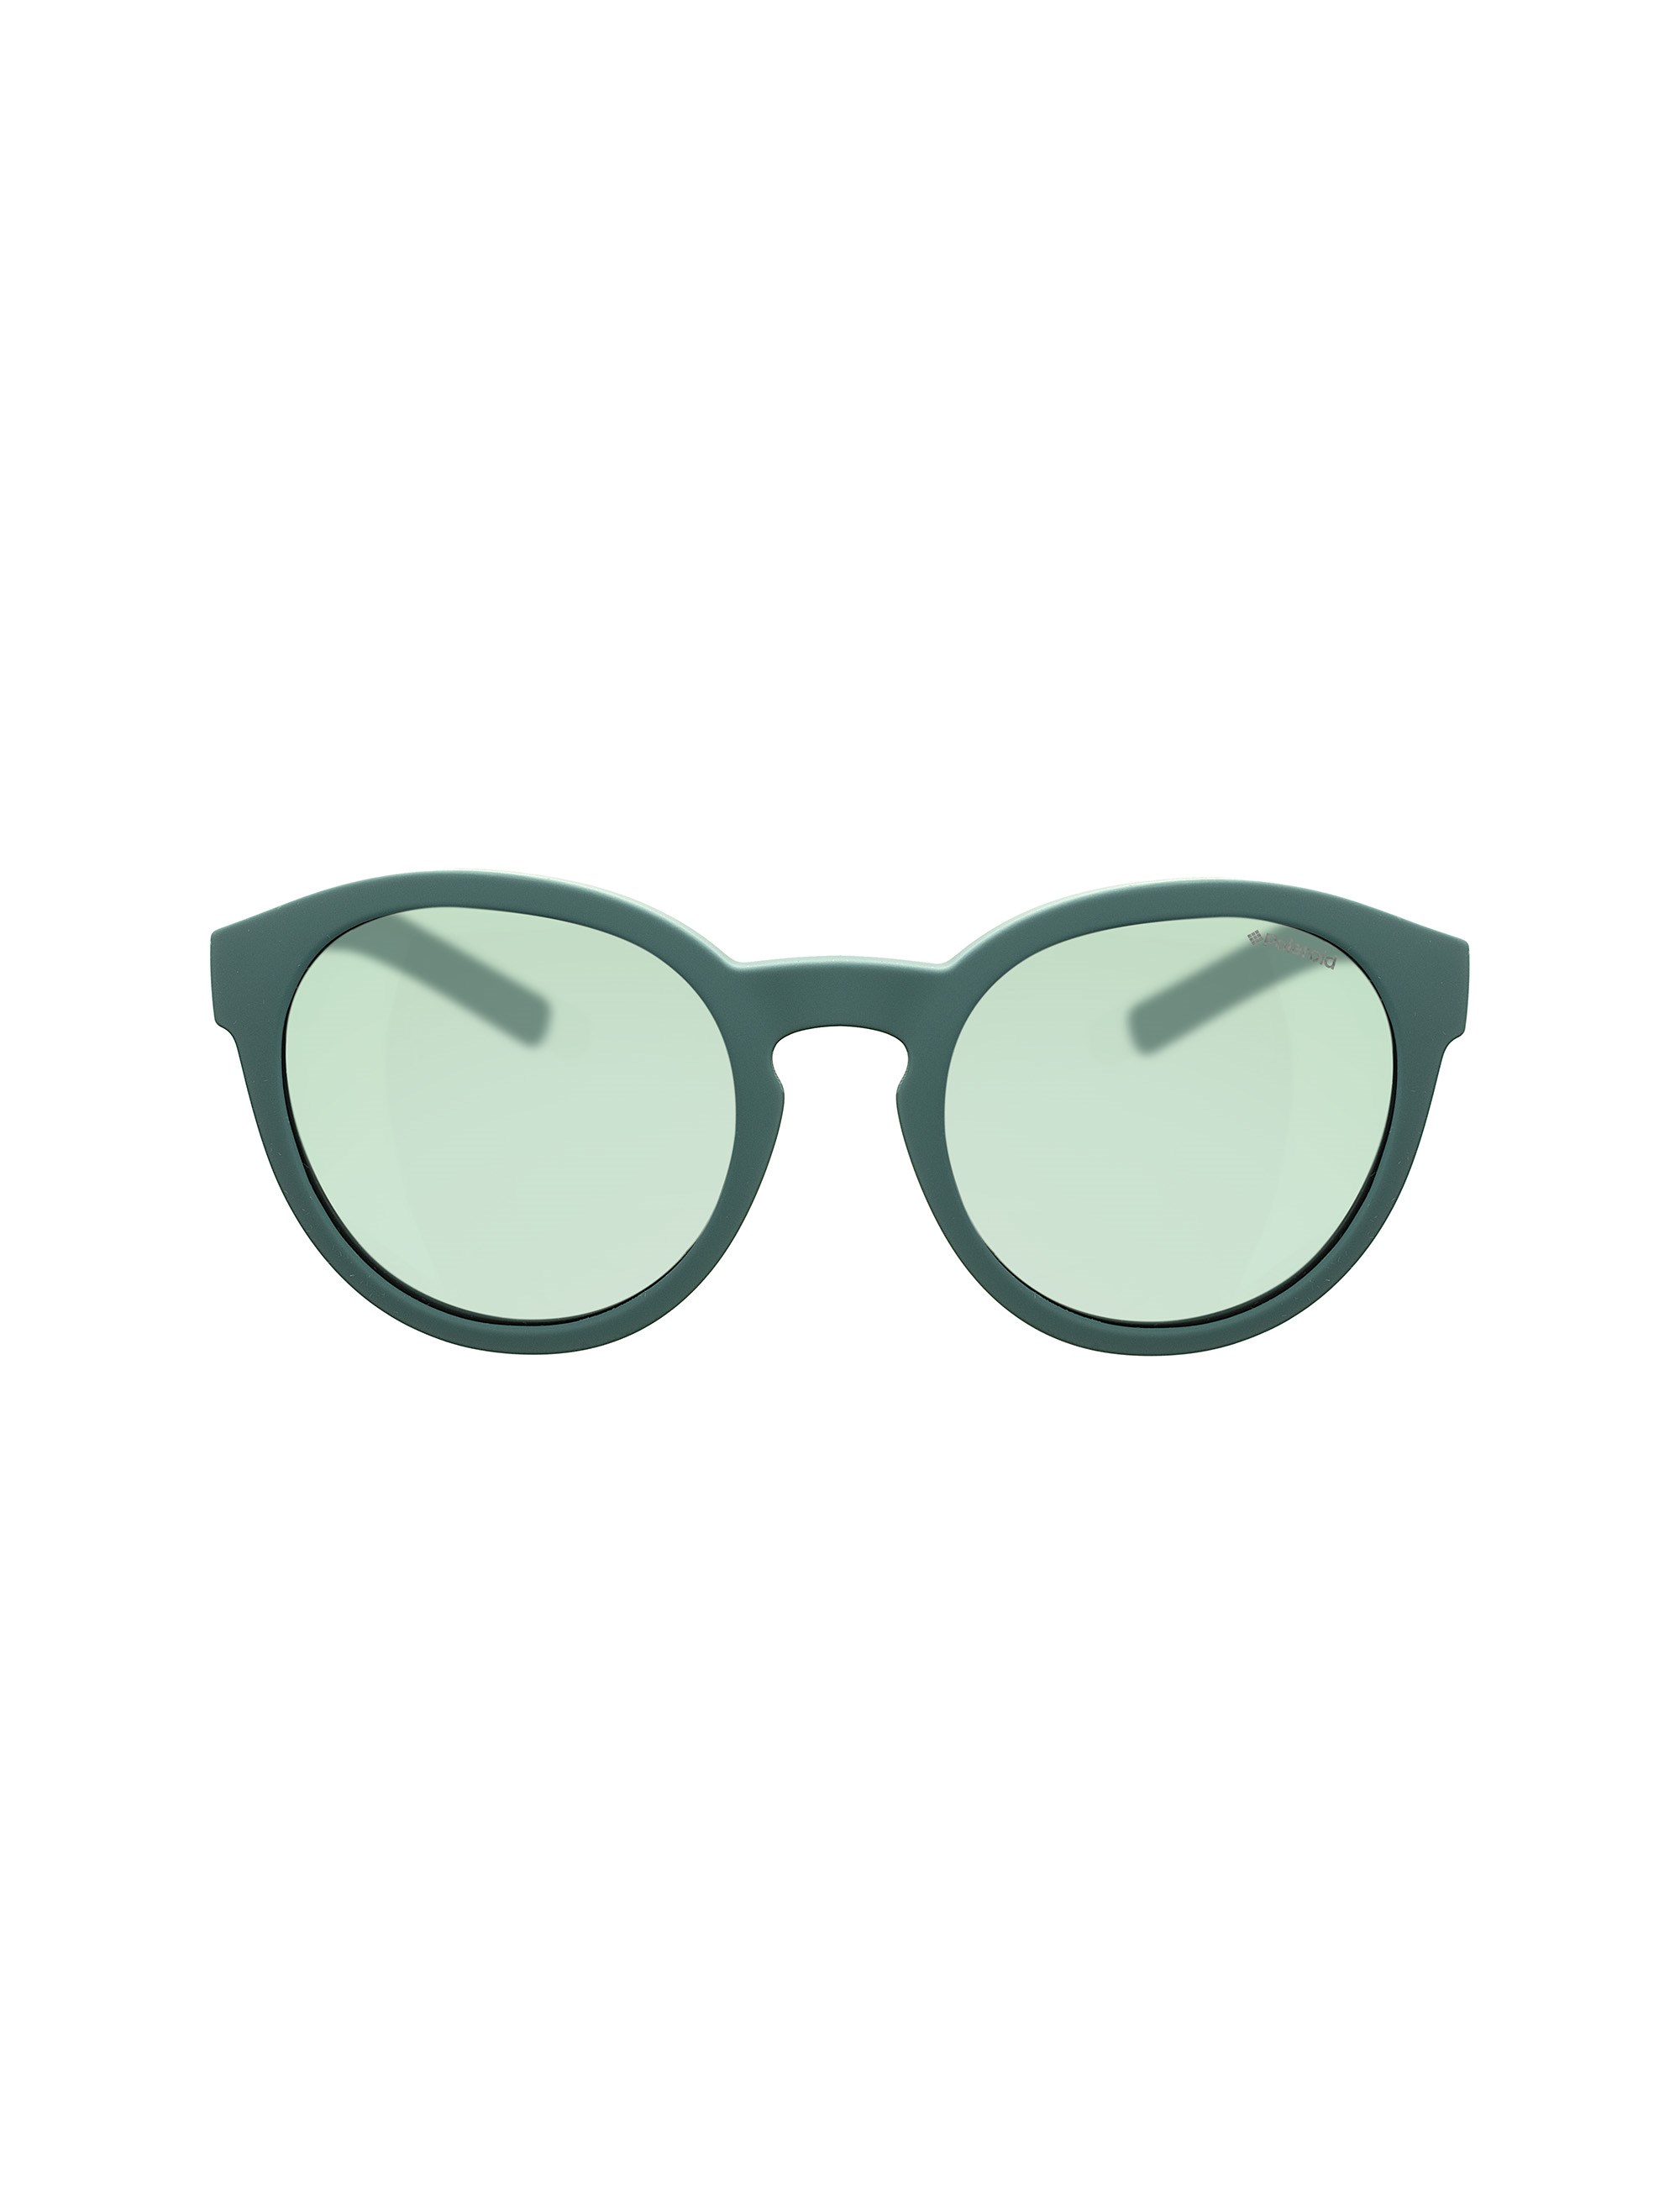 عینک آفتابی پنتوس بچگانه - پولاروید